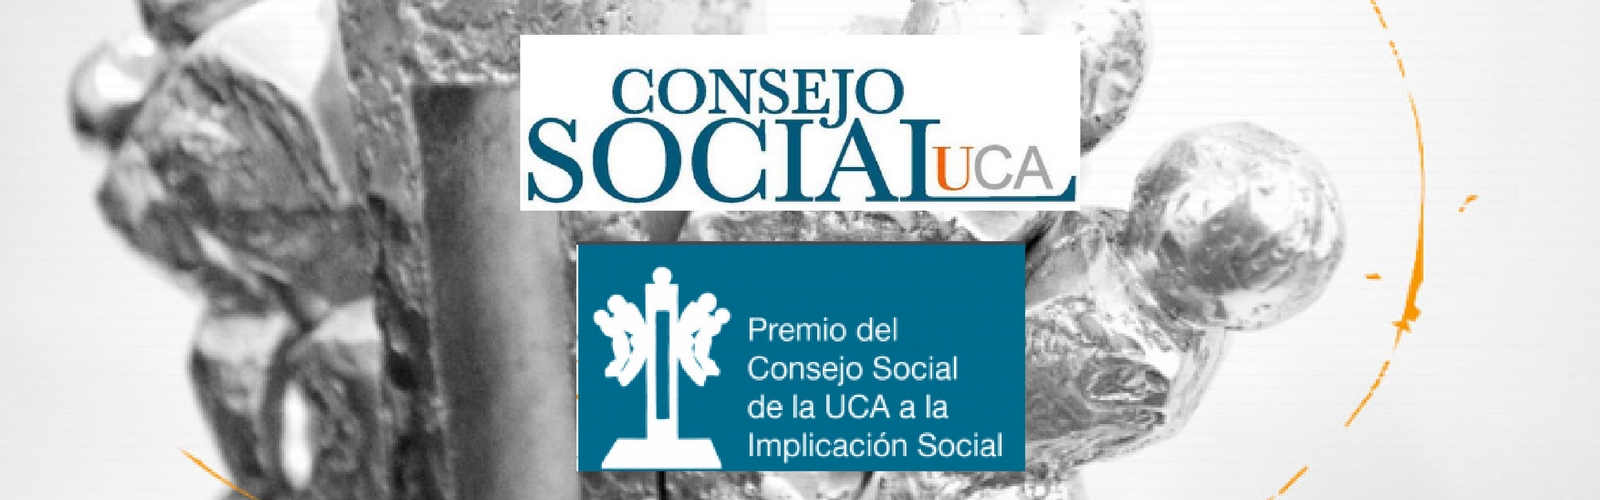 Premio del Consejo Social de la UCA a la Implicación Social